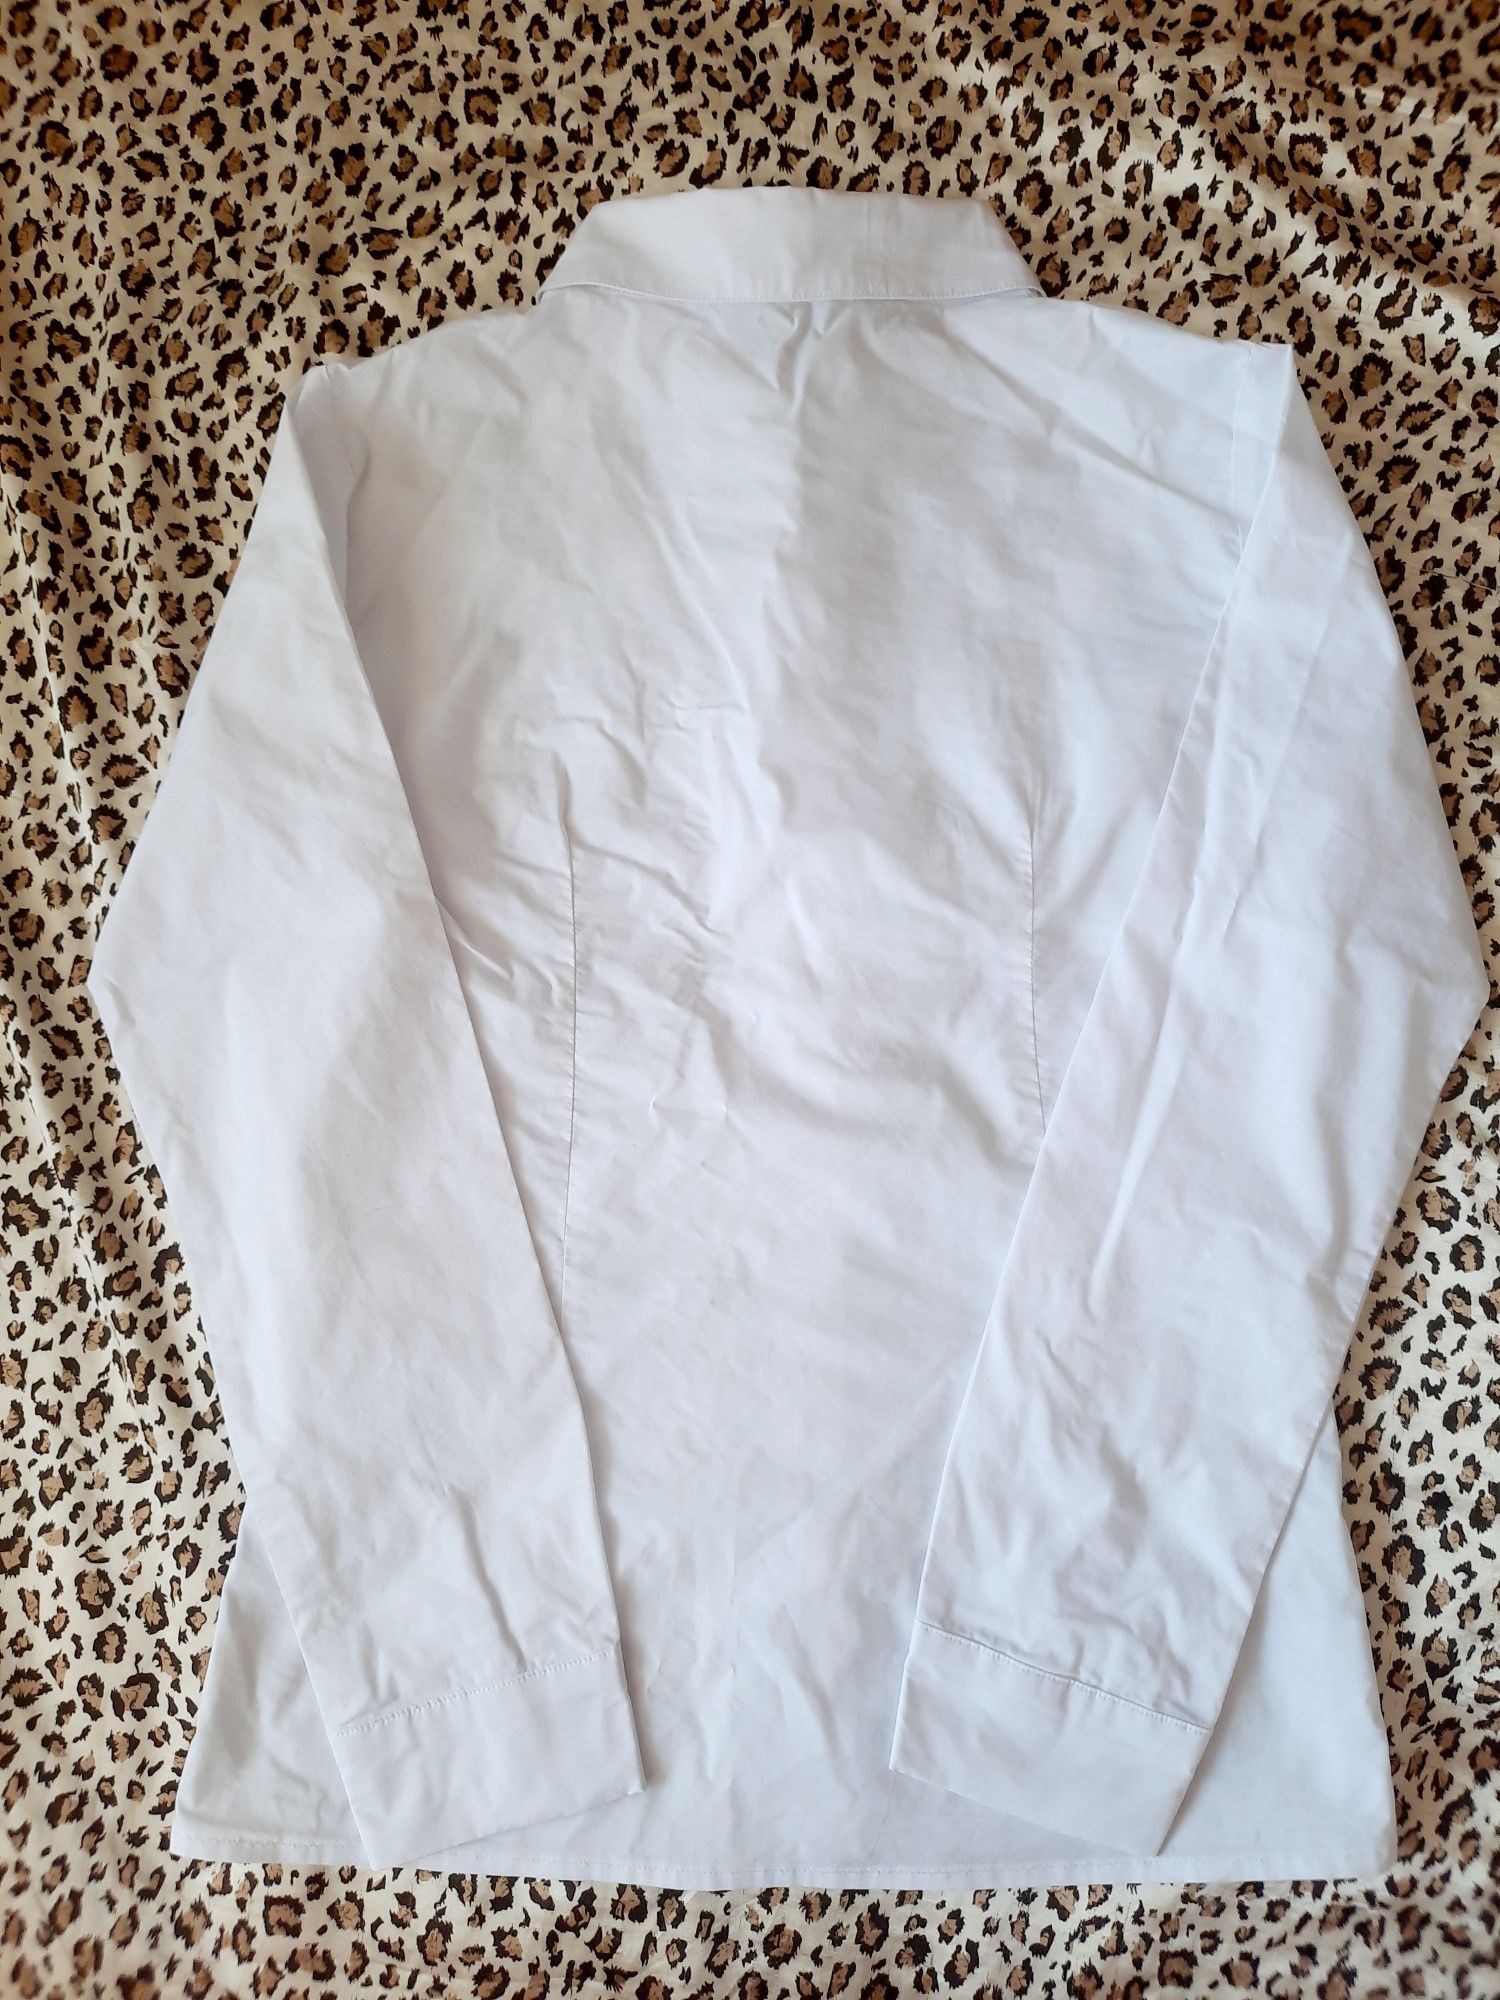 Блузки білі на 12-14 лет, майже нові